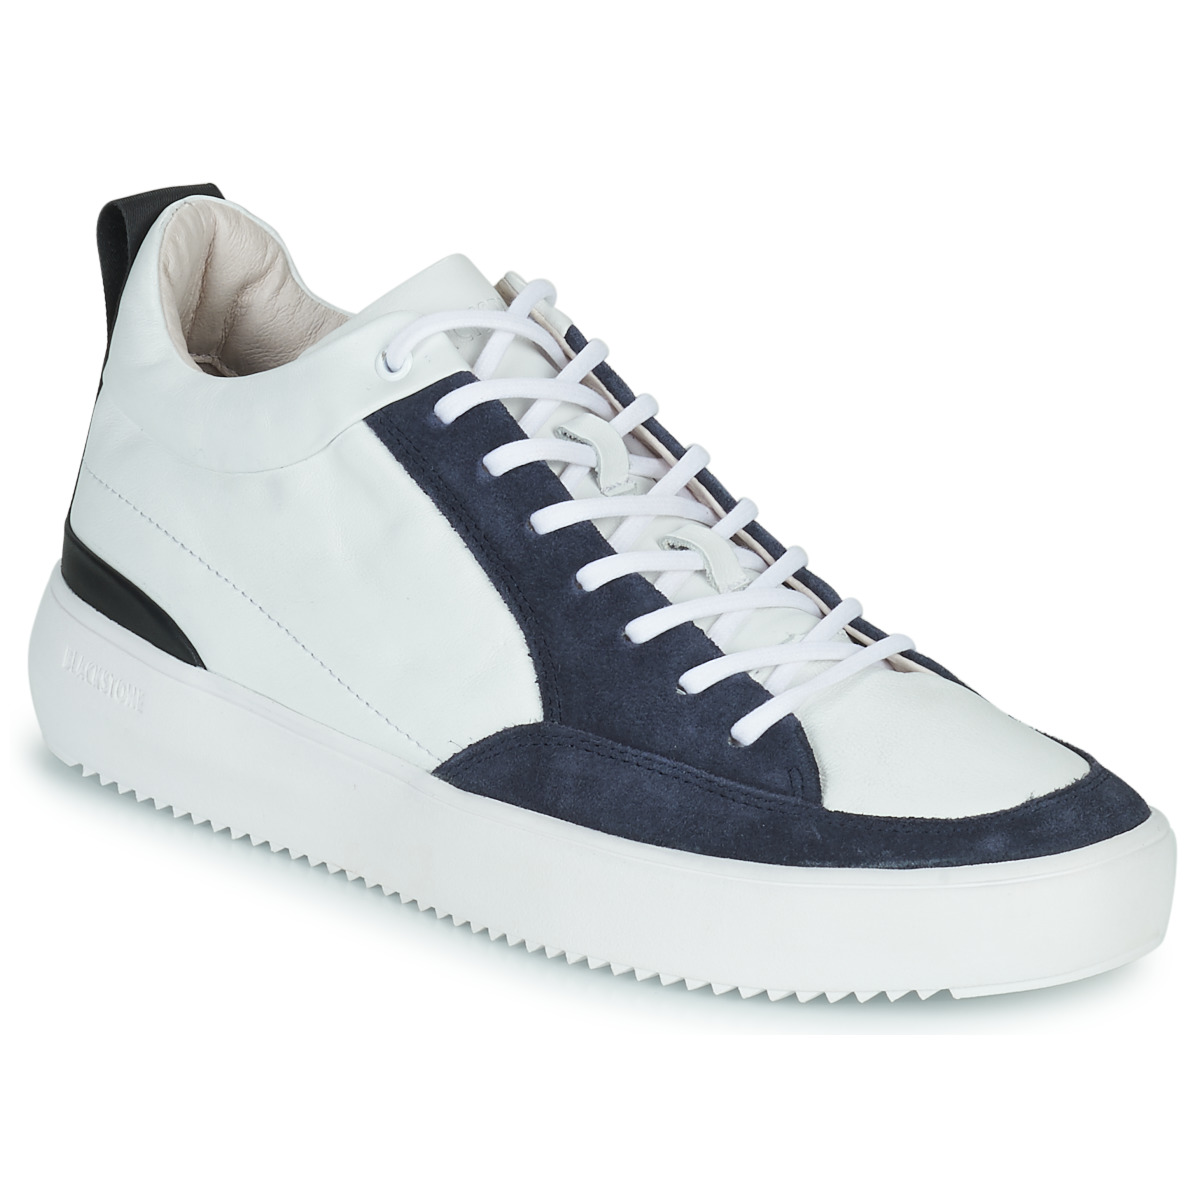 Schoenen Heren Hoge sneakers Blackstone XG90 Wit / Marine